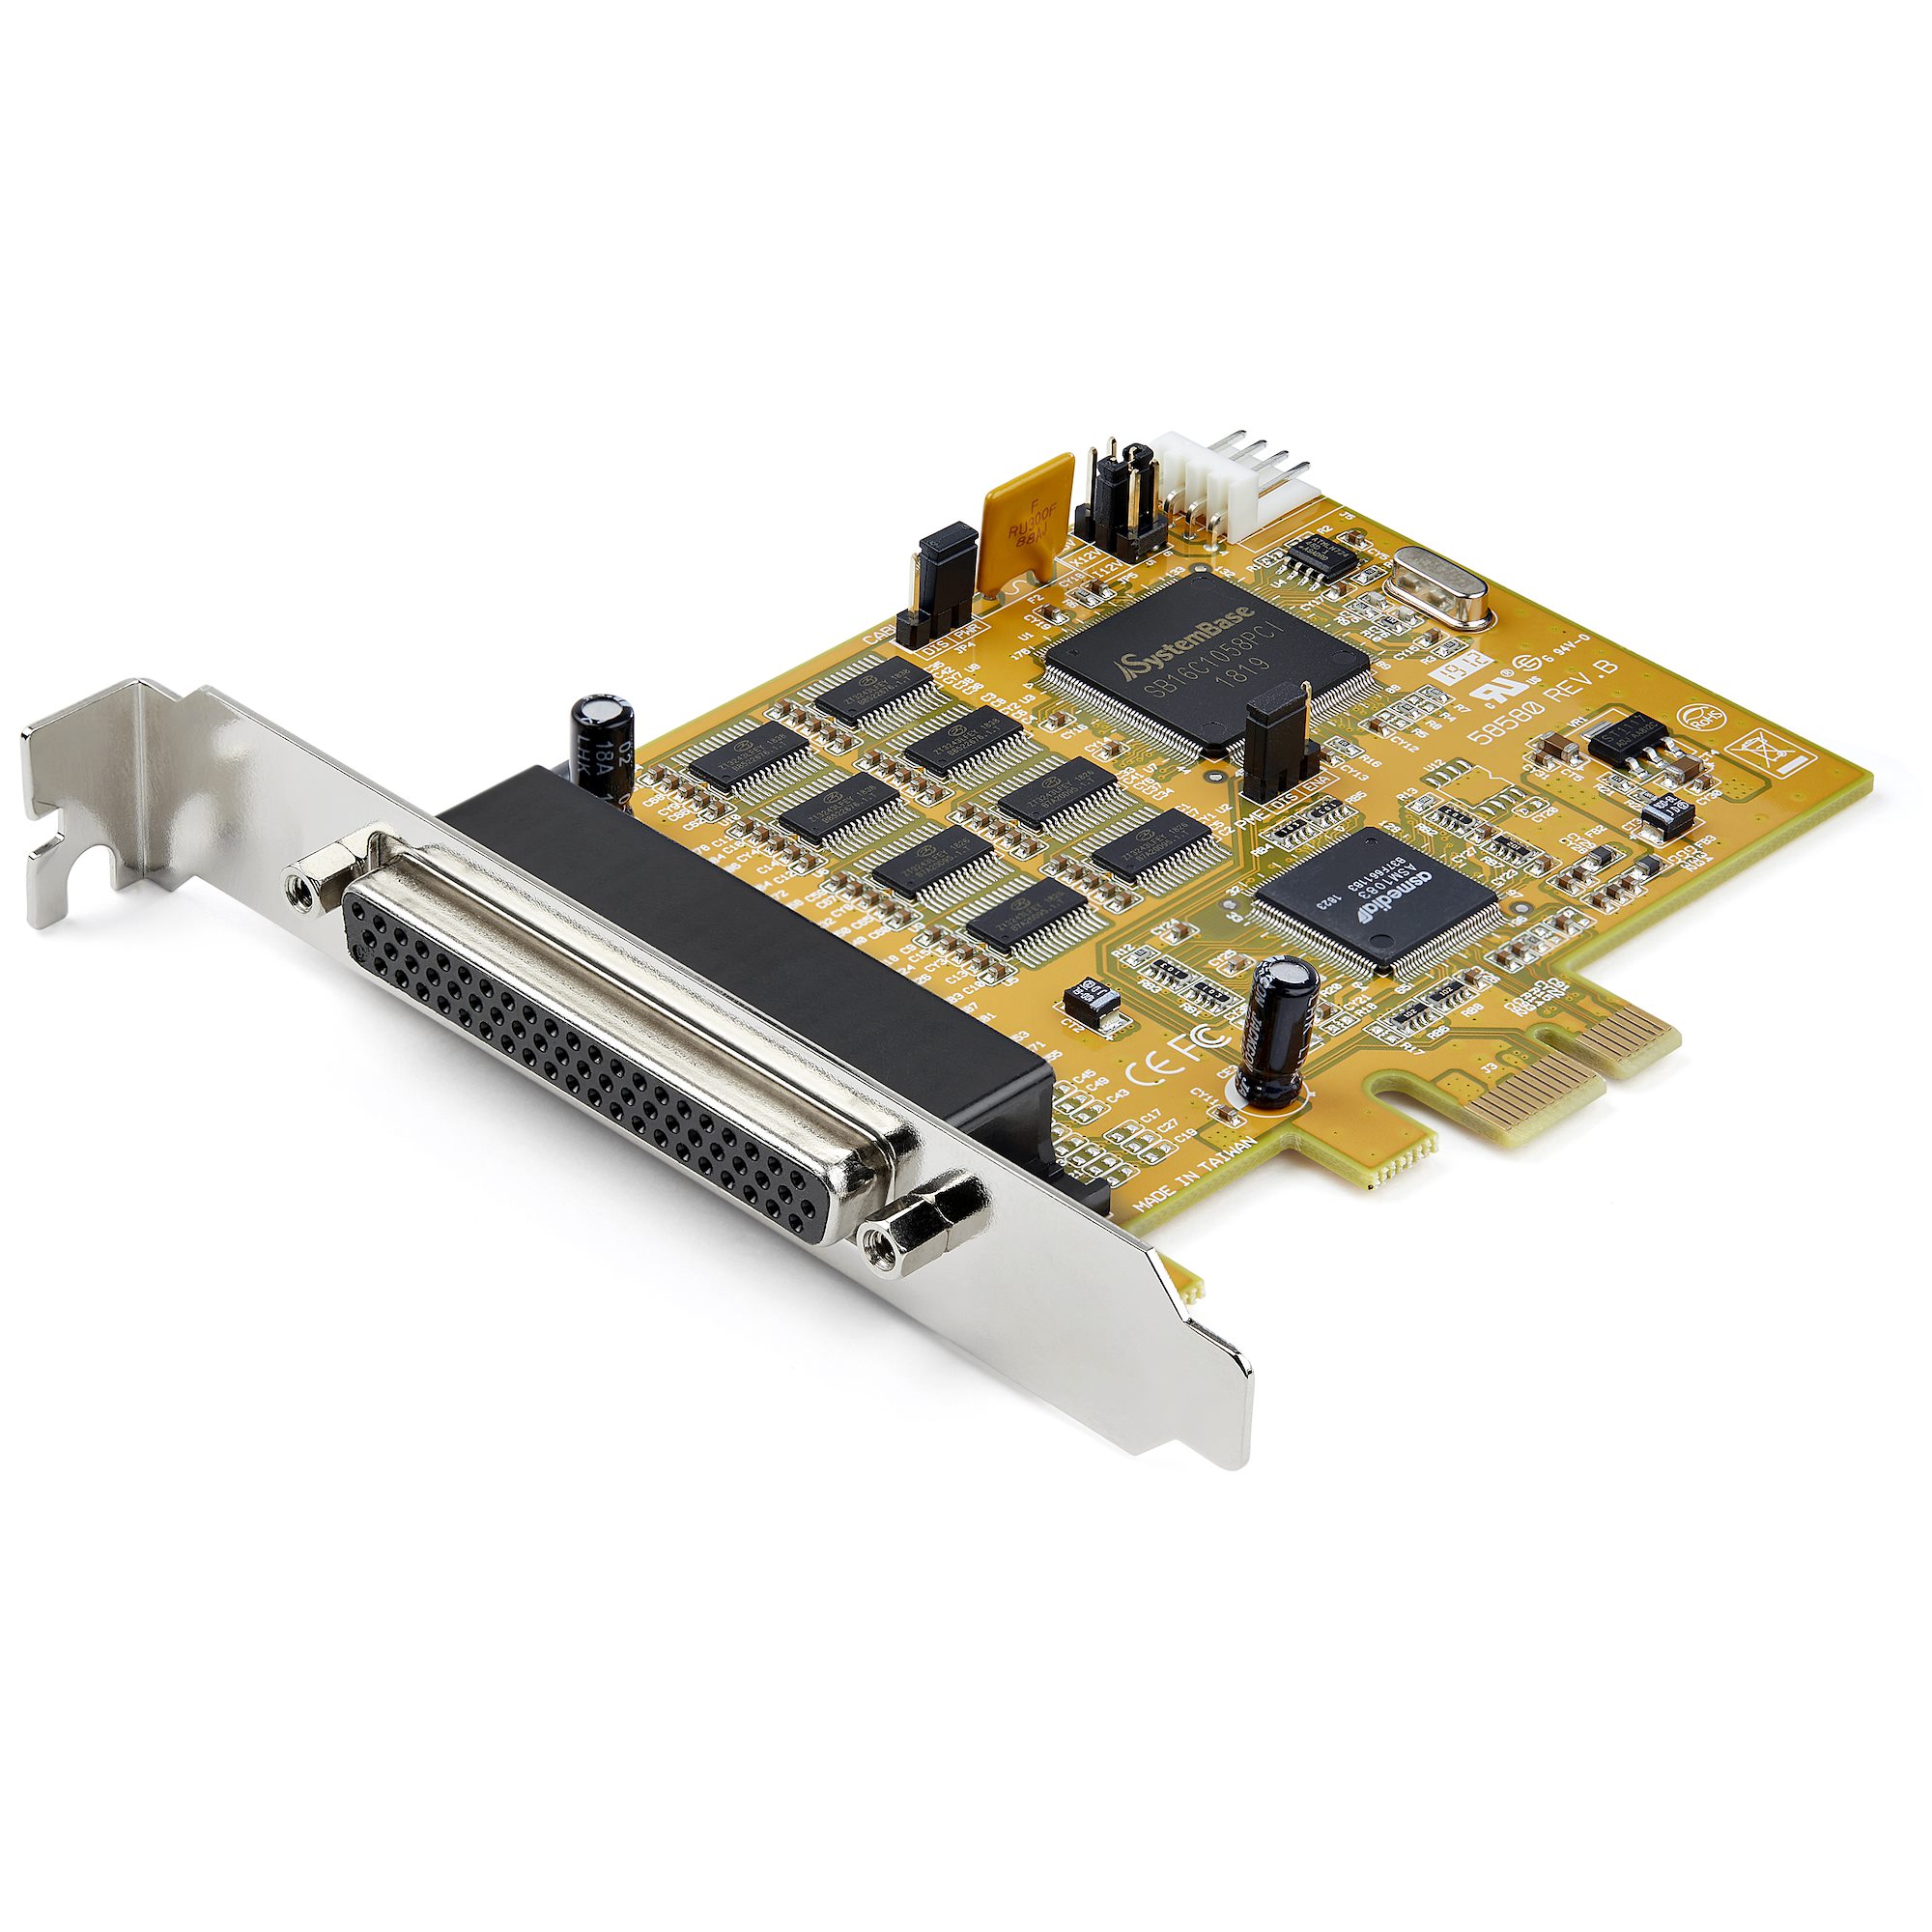 8シリアルポート増設PCI Expressカード RS232C拡張ボード 16C1050 UART COMポート増設PCIeカード 15kV ESD保護 Windows ＆ Linux対応 スターテック StarTech.com 全使用期間保証